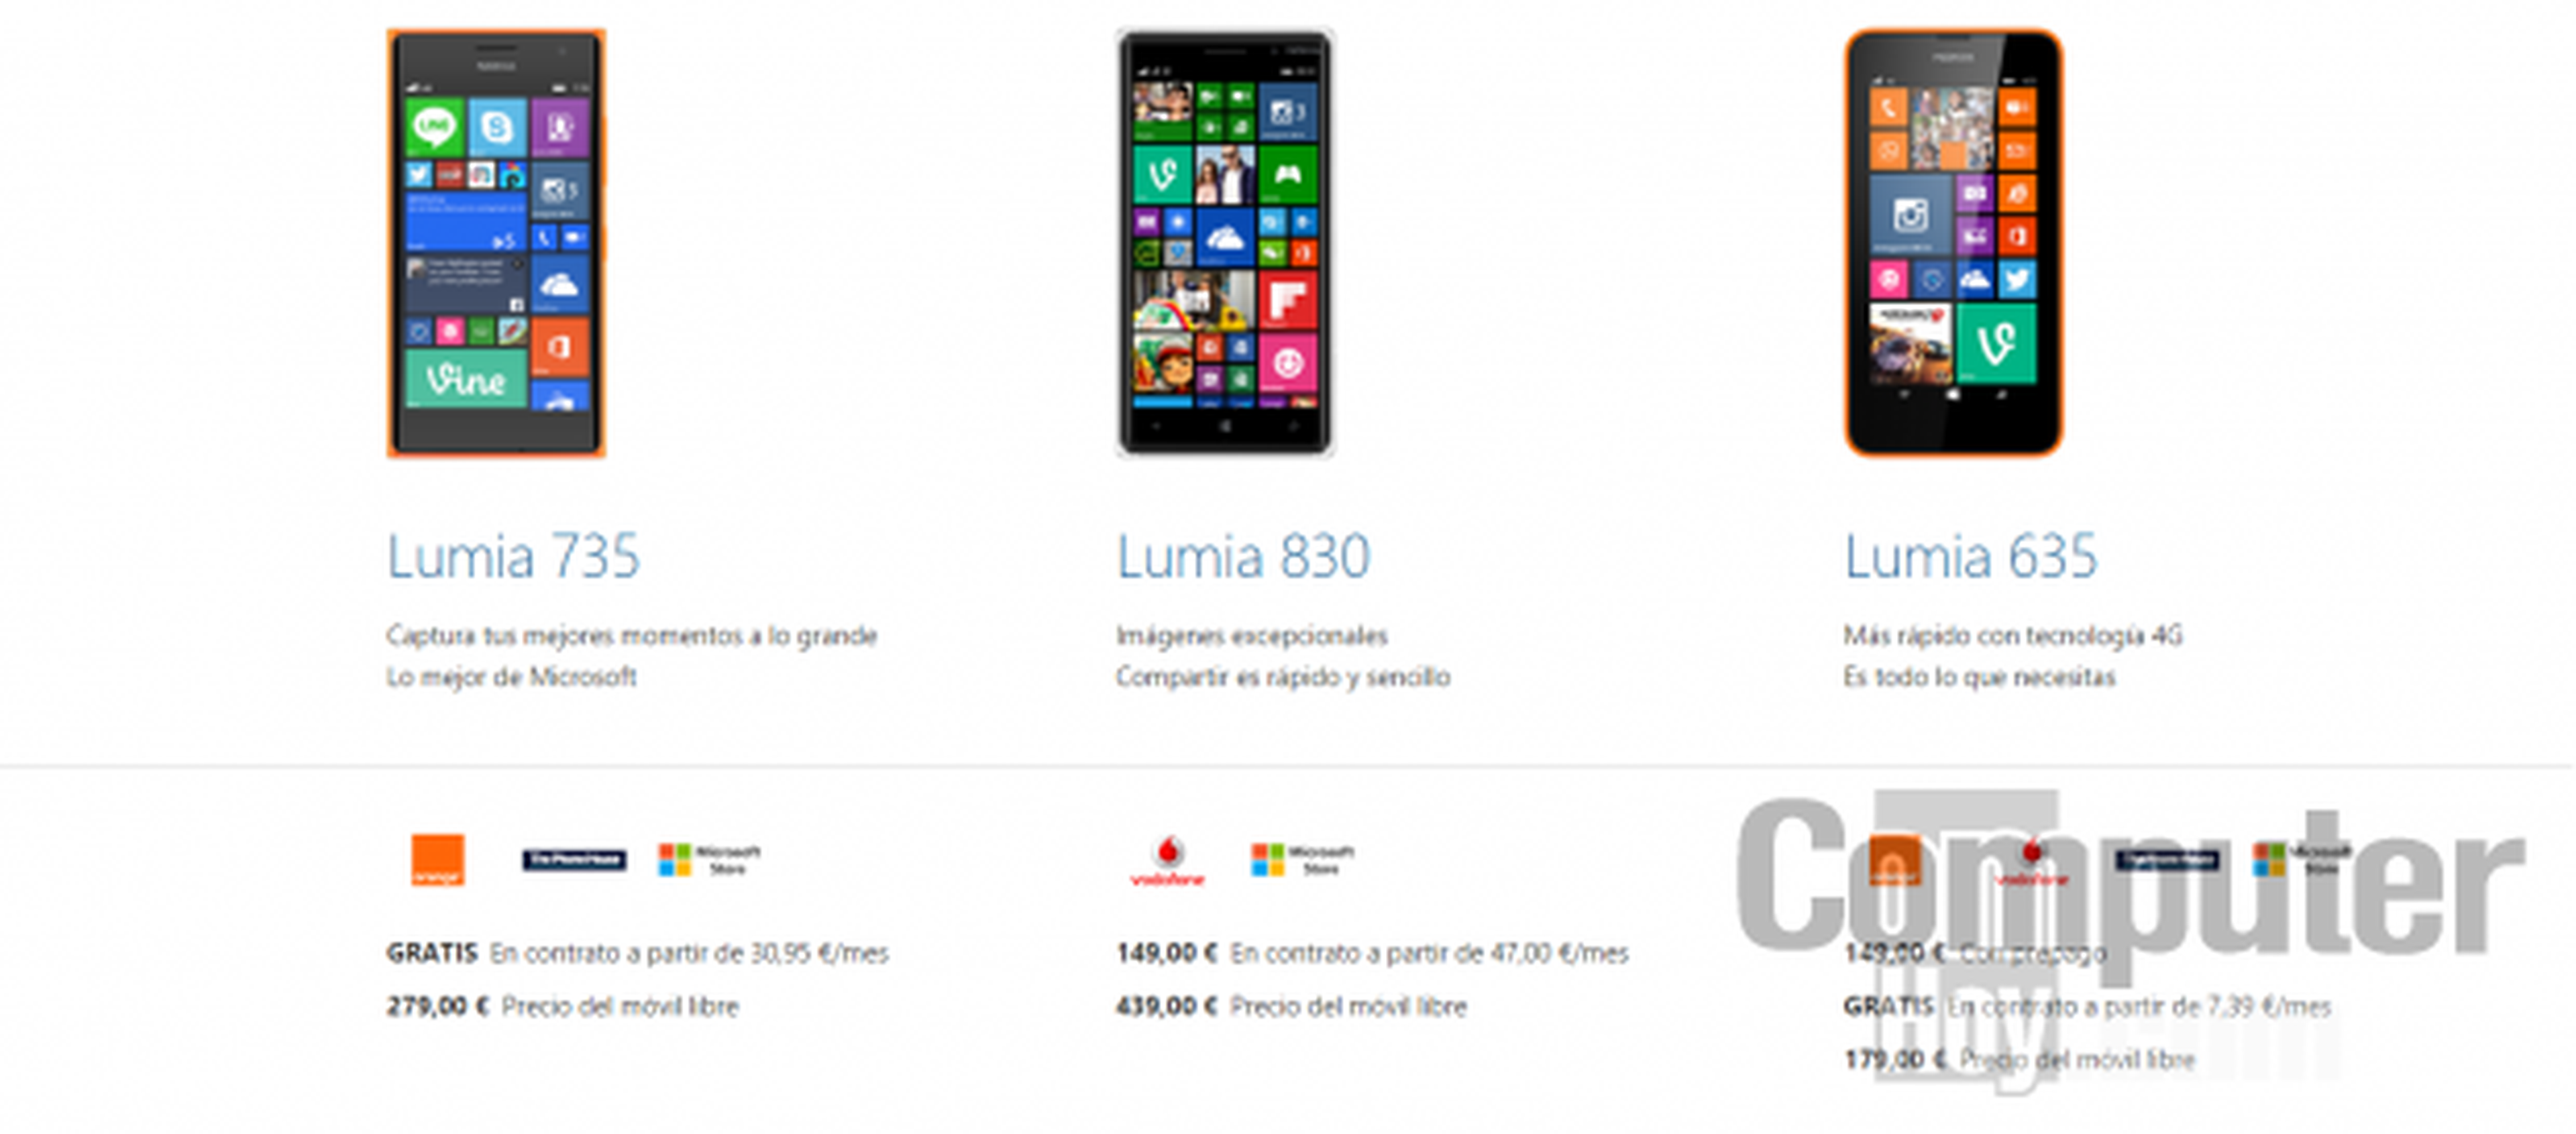 Nokia Lumia 830, el equilibrio necesario